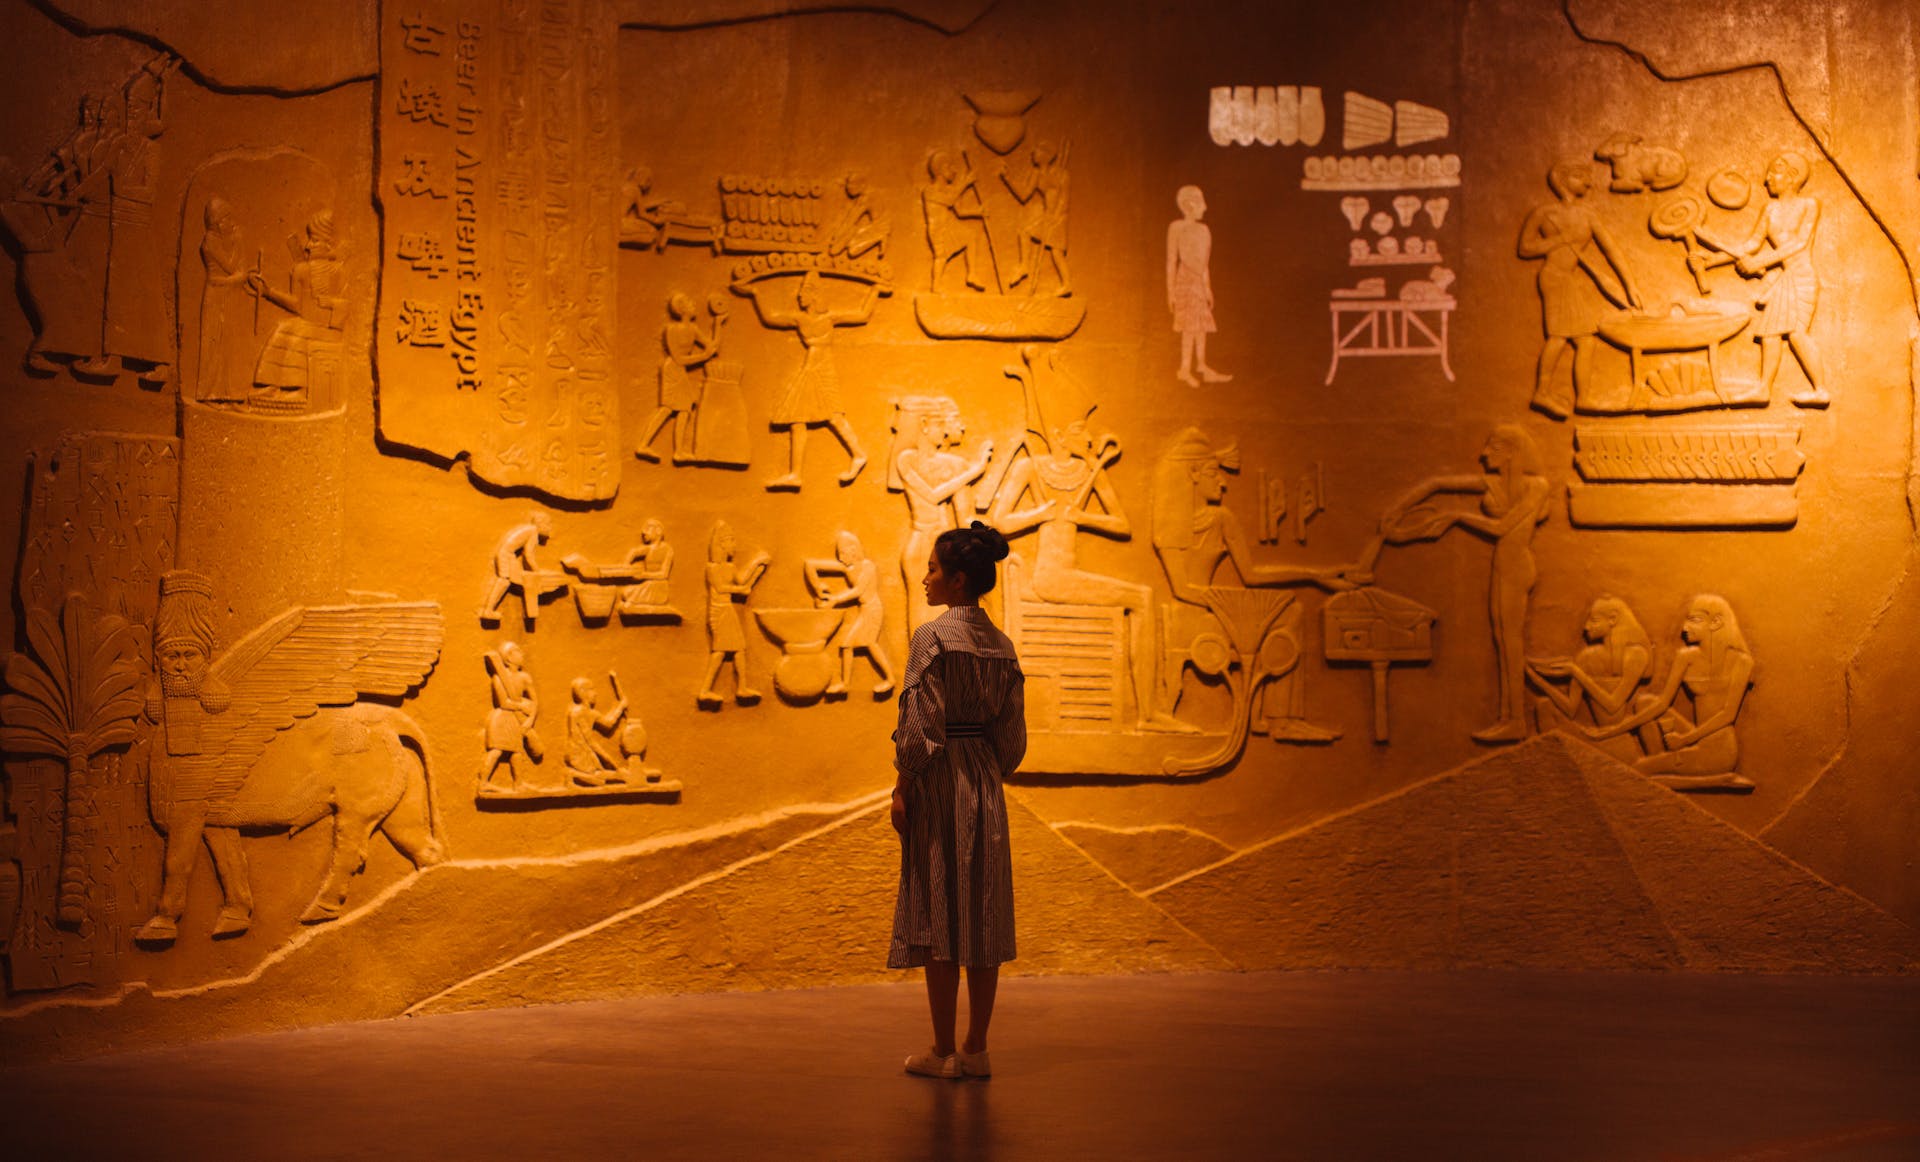 Visiteuse curieuse devant une murale de hiéroglyphes illustrant les questions qui révèlent notre monde 